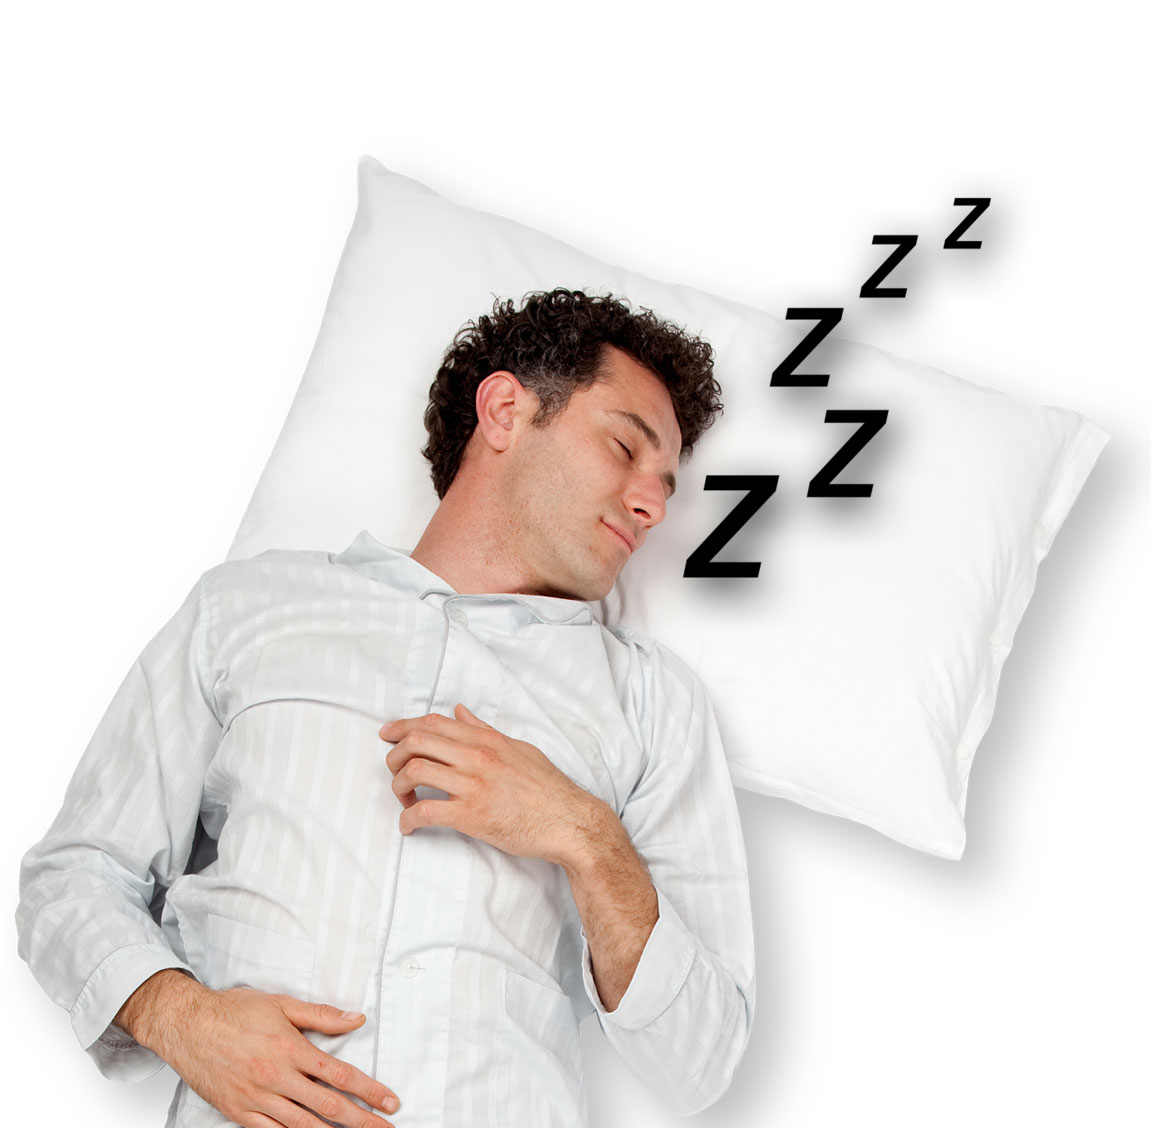 Skvělé triky na spaní, o kterých jste pravděpodobně nikdy neslyšeli